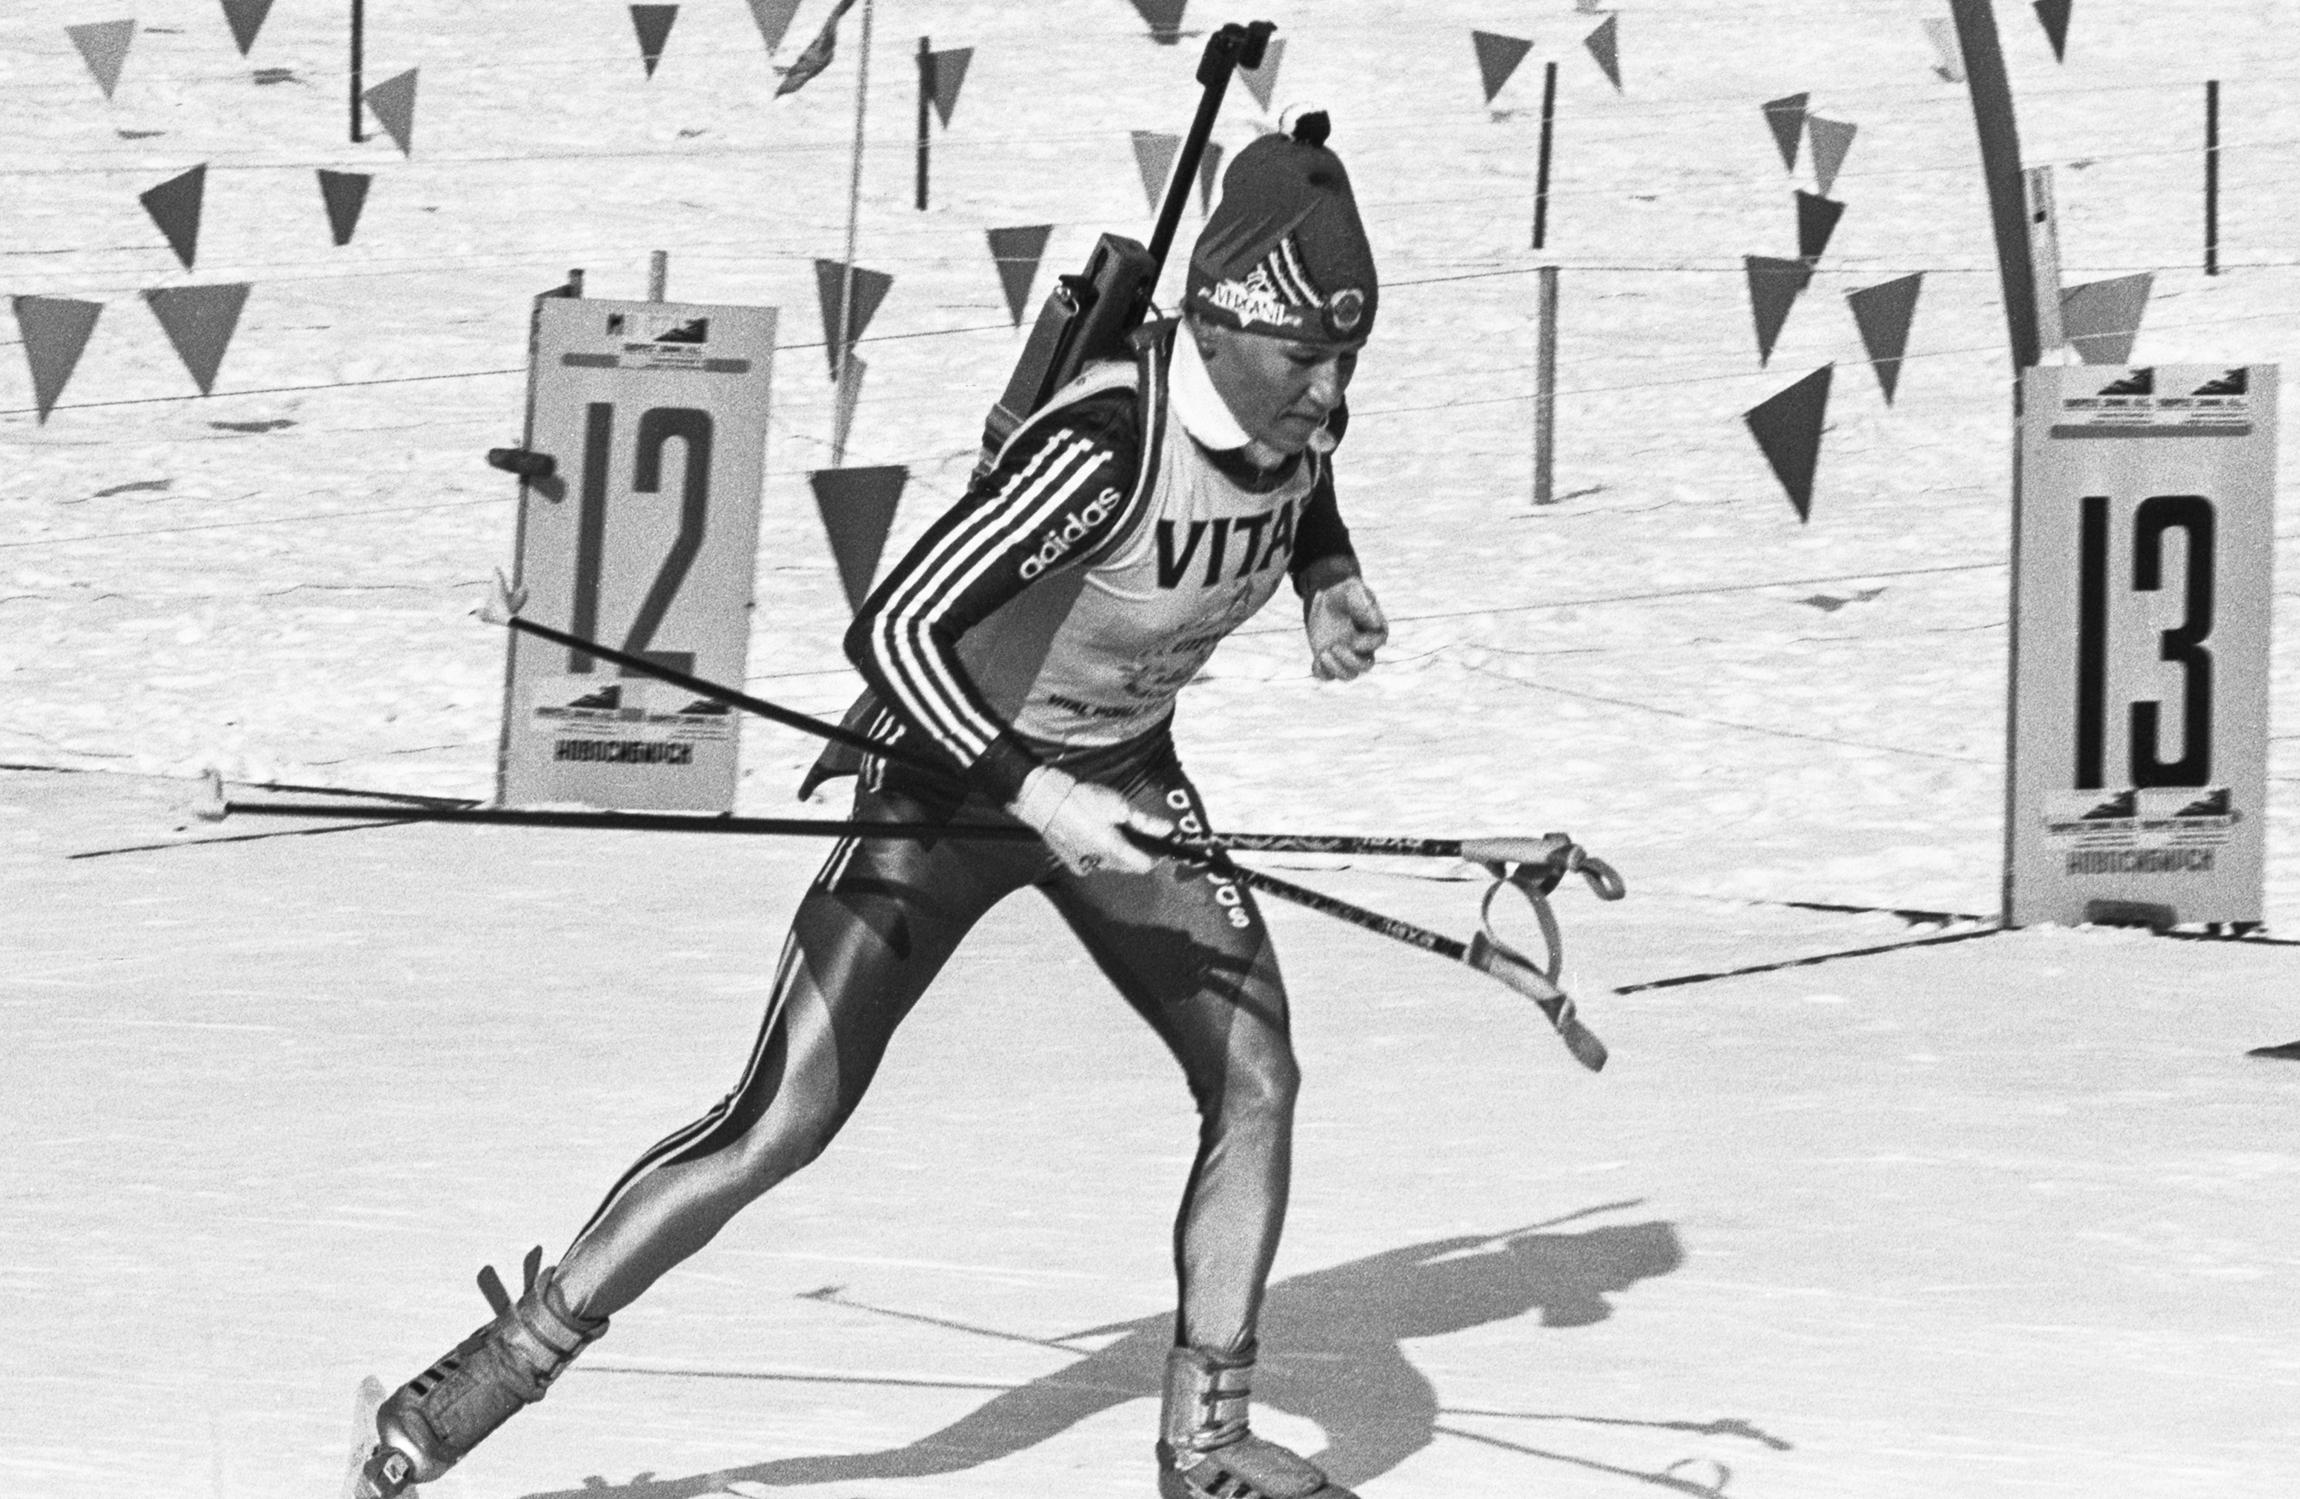 В 1992 году женский биатлон дебютировал в программе Олимпийских игр. Резцова выступила на Играх в Альбервилле, куда она отправилась в статусе звезды и одной из претенденток на медали. Резцова и стала первой в истории биатлона олимпийской чемпионкой, взяв золото в спринтерской гонке на 7,5 км.

На фото: 19 марта 1992&nbsp;года. Резцова на дистанции.